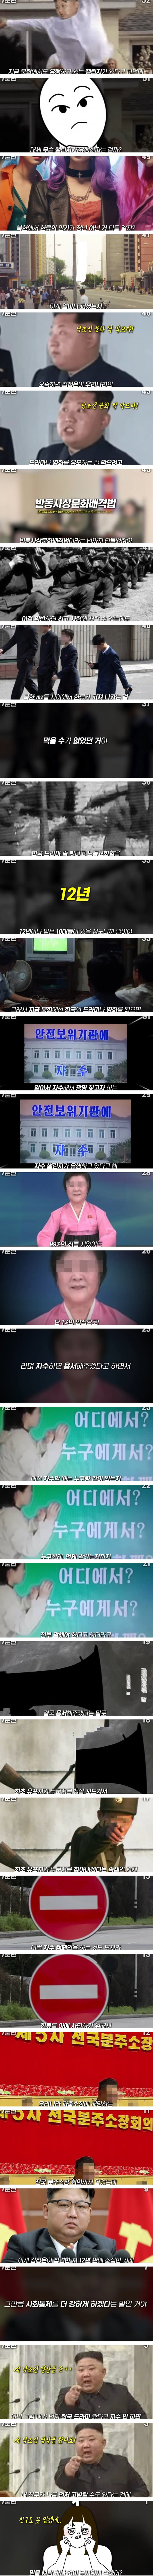 요즘 북한에서 유행 중인 챌린지